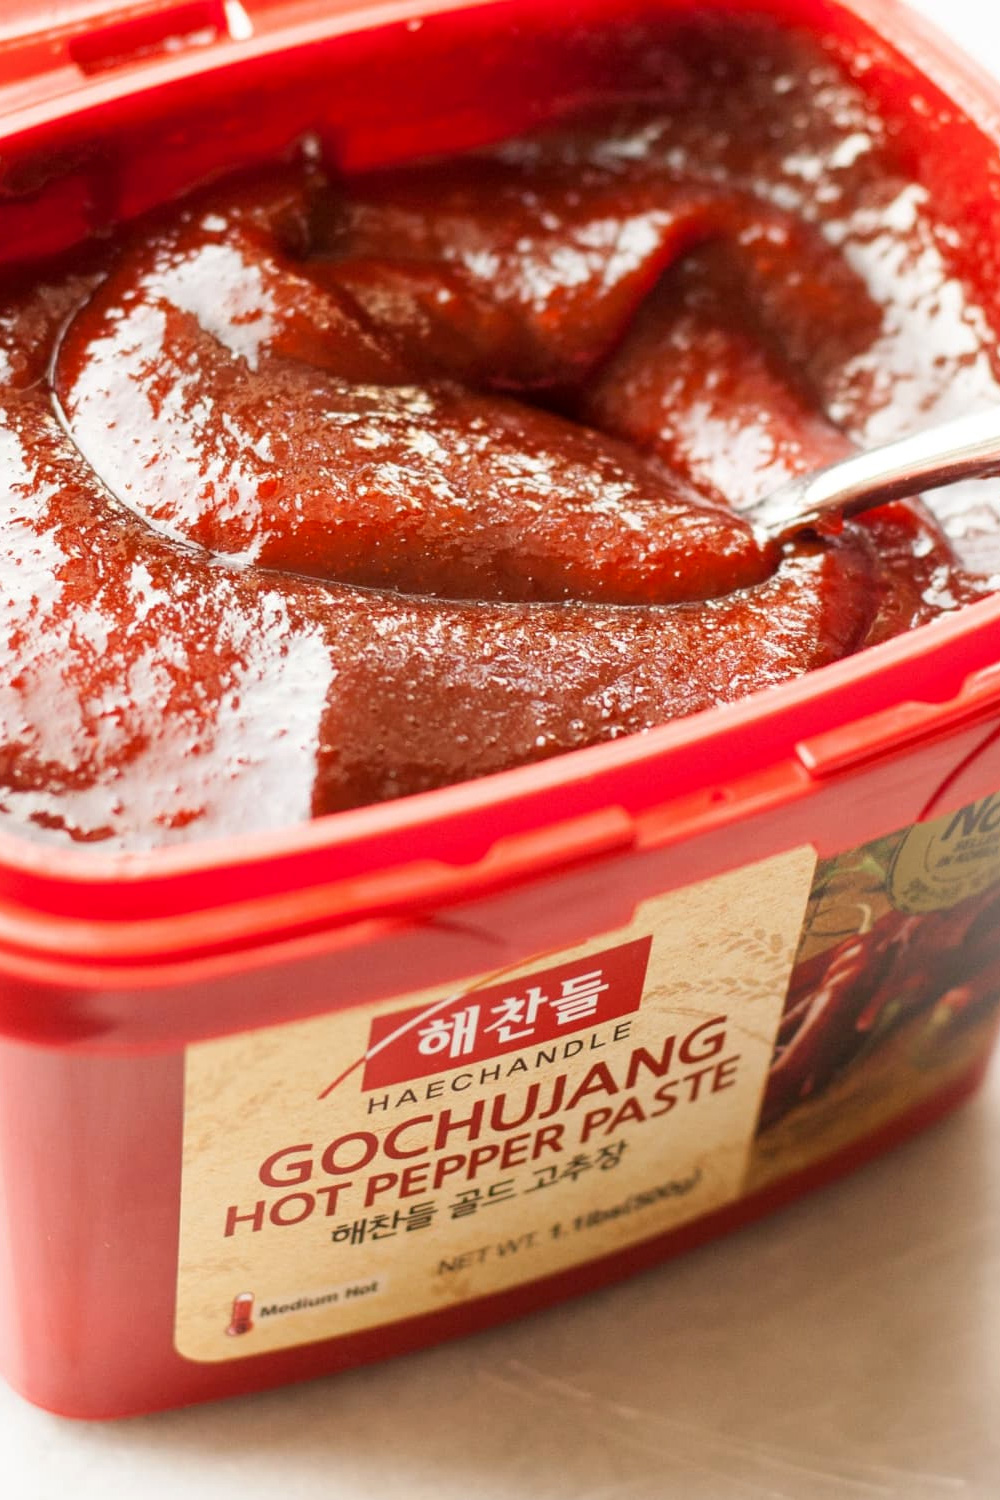 Gochujang Korean Chili Paste Ingredient Guide